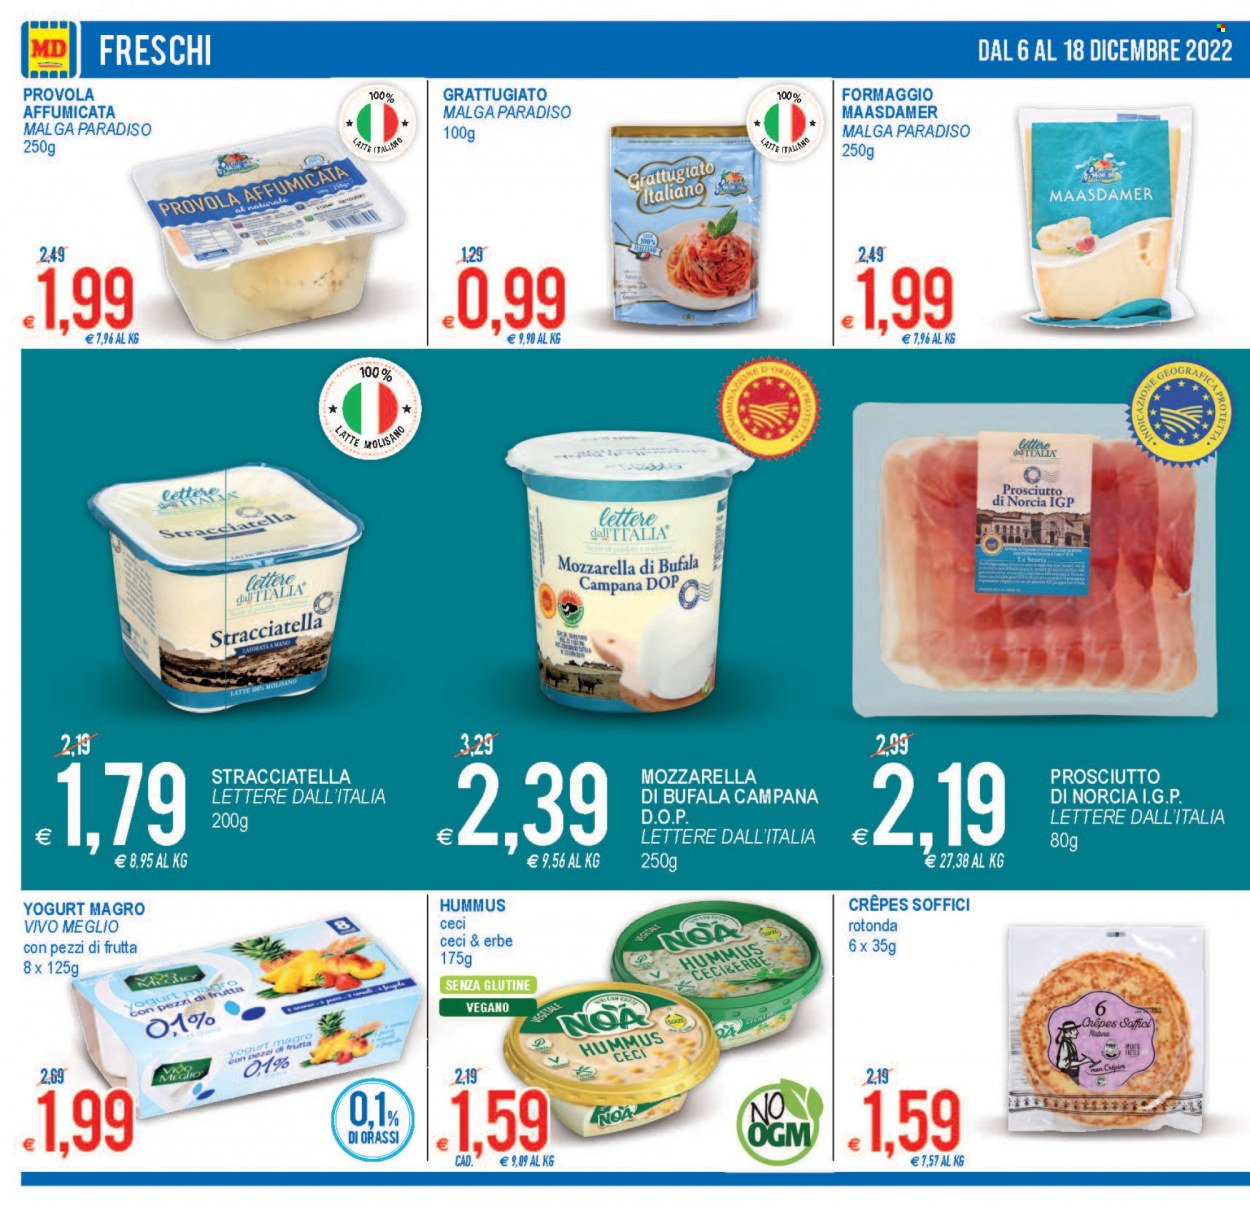 thumbnail - Volantino MD Discount - 6/12/2022 - 18/12/2022 - Prodotti in offerta - prosciutto, hummus, formaggio, mozzarella, provola, mozzarella di bufala, formaggio grattugiato, yogurt, latte. Pagina 12.